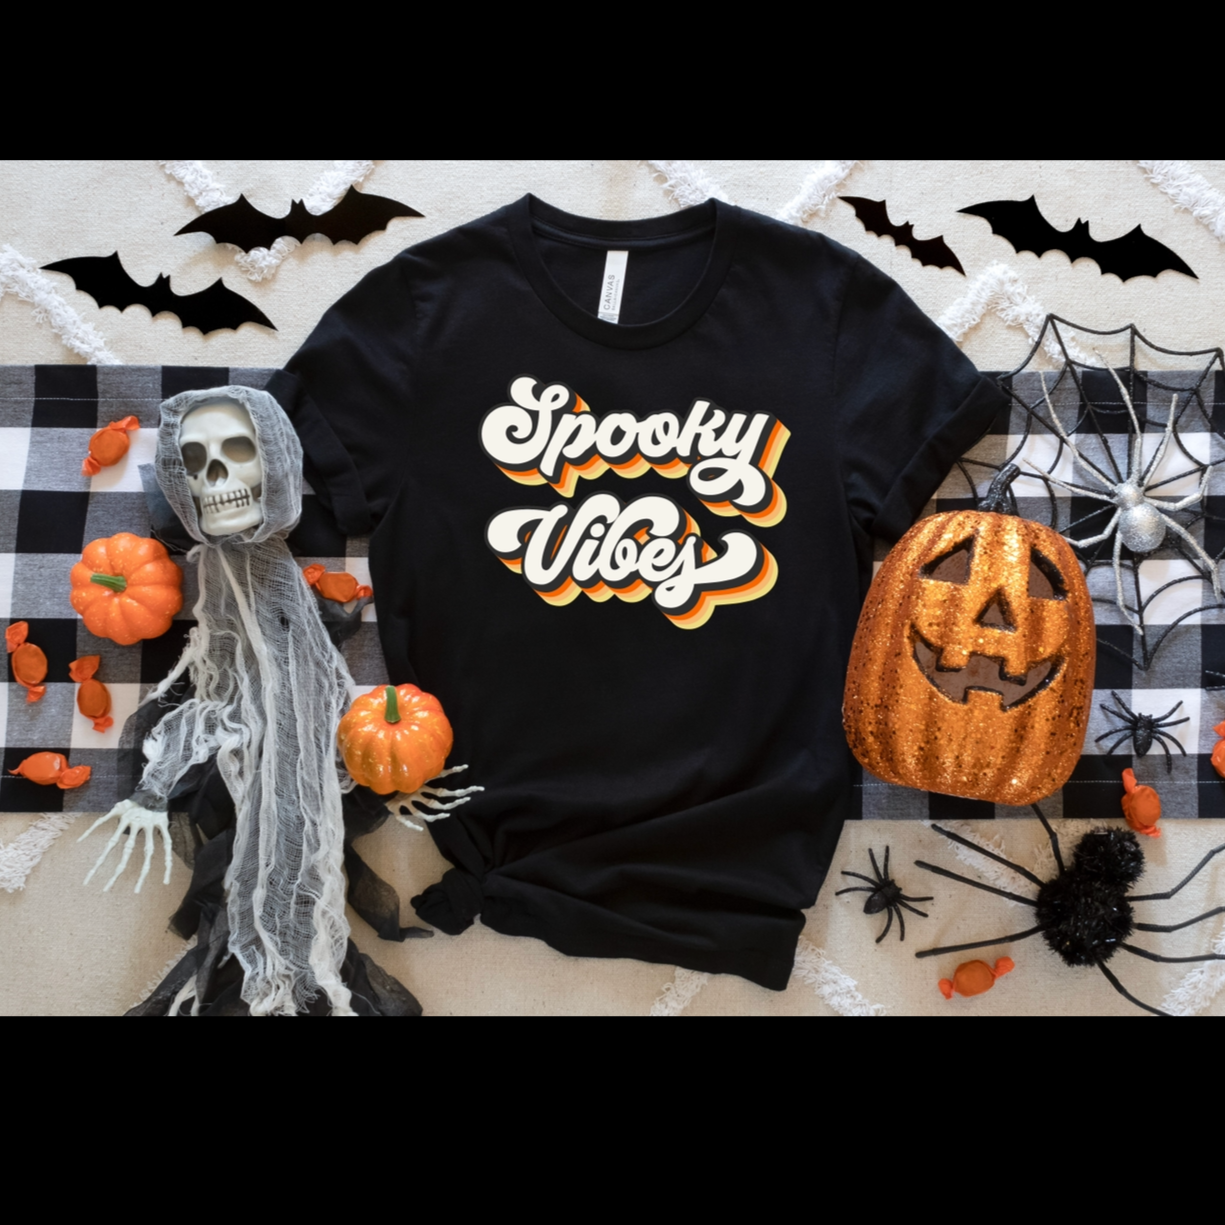 Spooky vibes tshirt